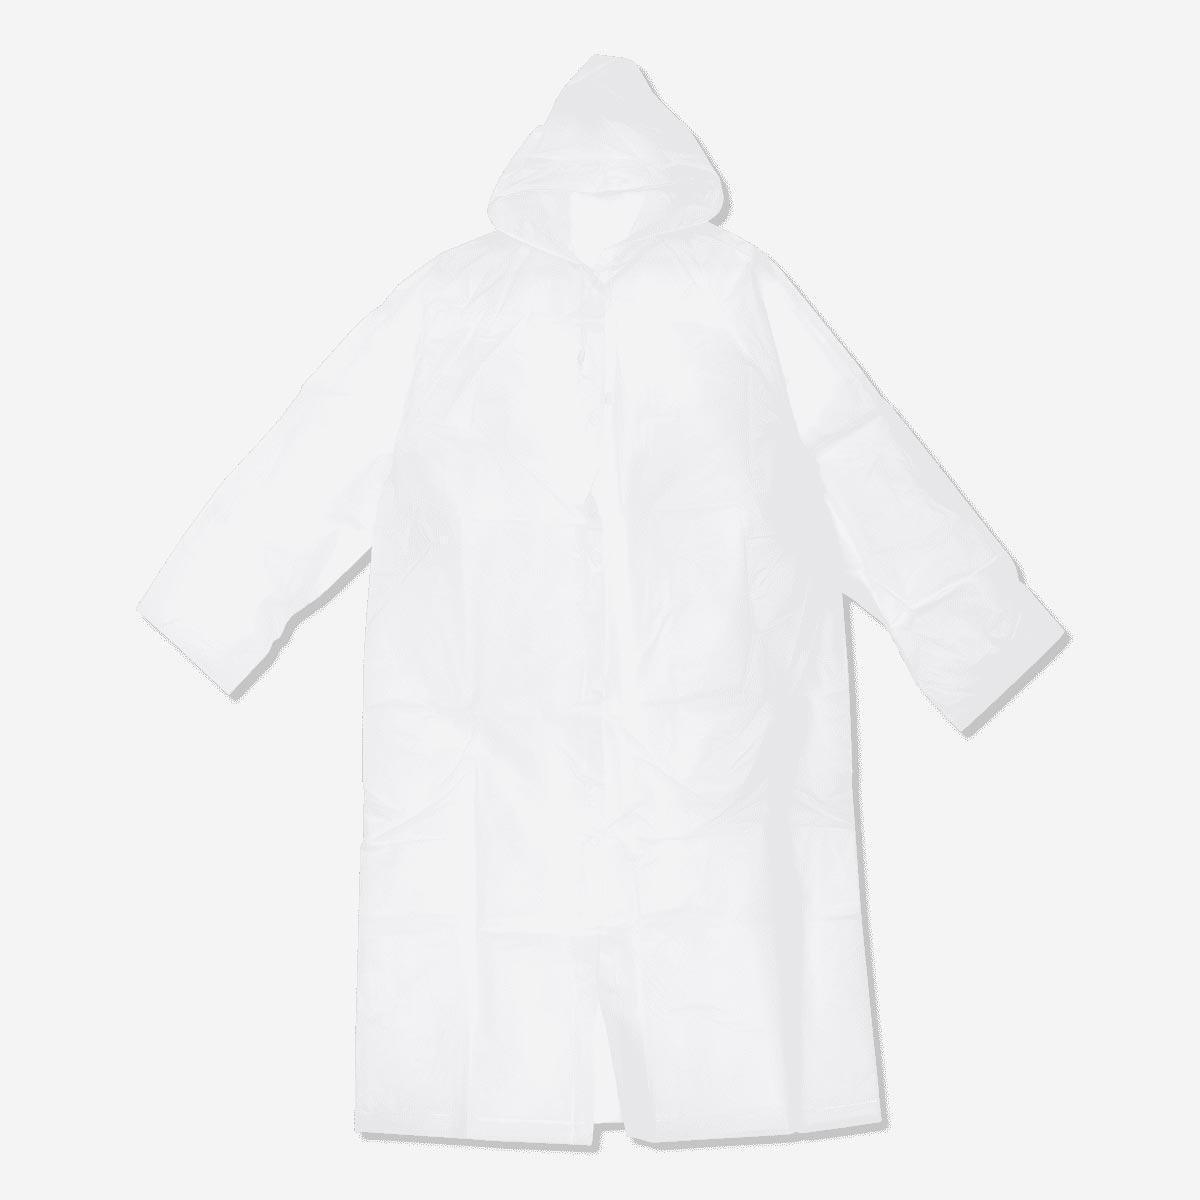 White raincoat, size s/m